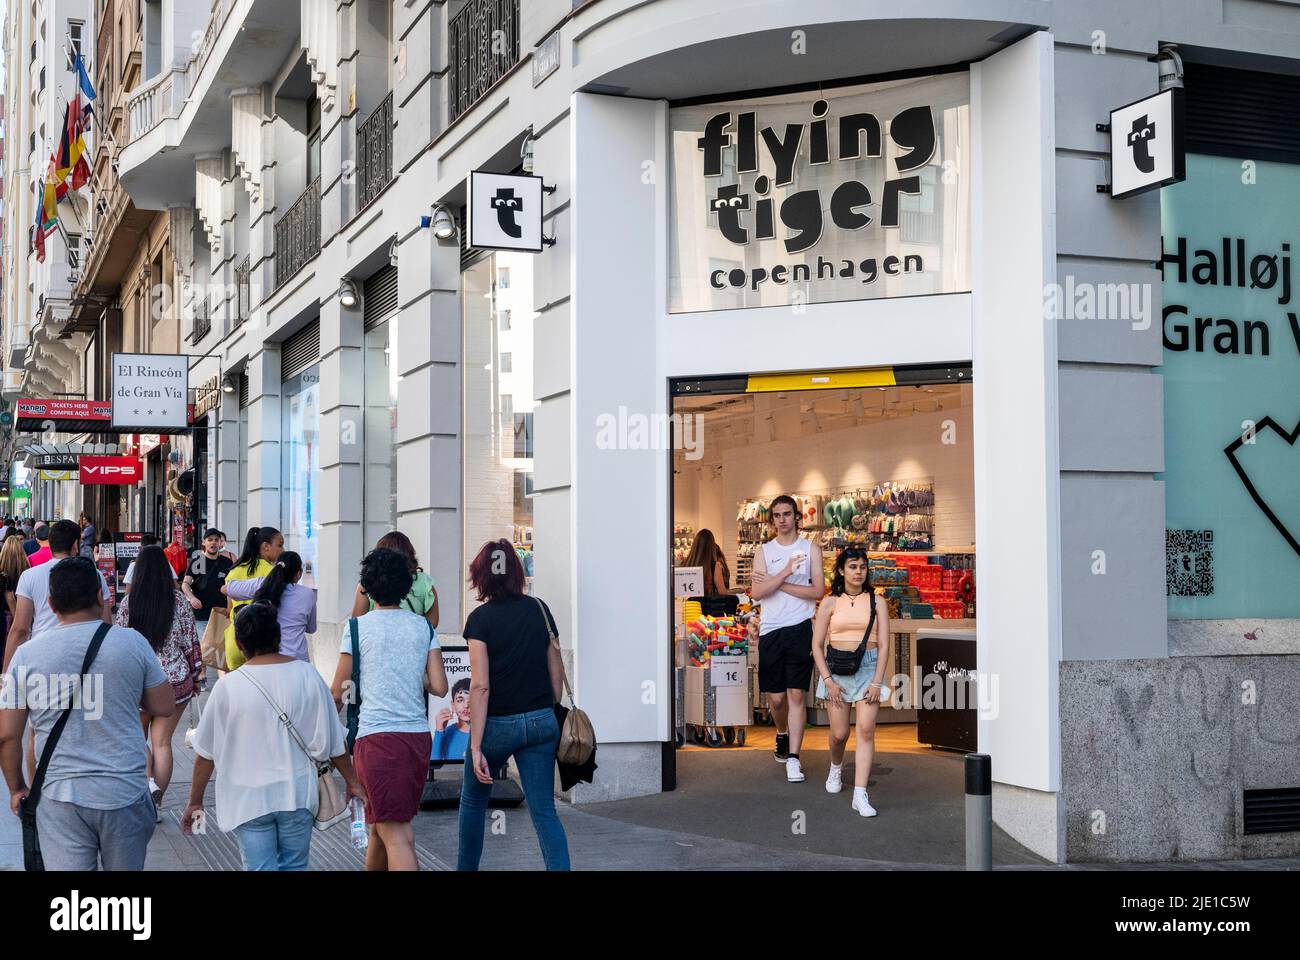 Flying tiger copenhagen store in immagini e fotografie stock ad alta  risoluzione - Alamy